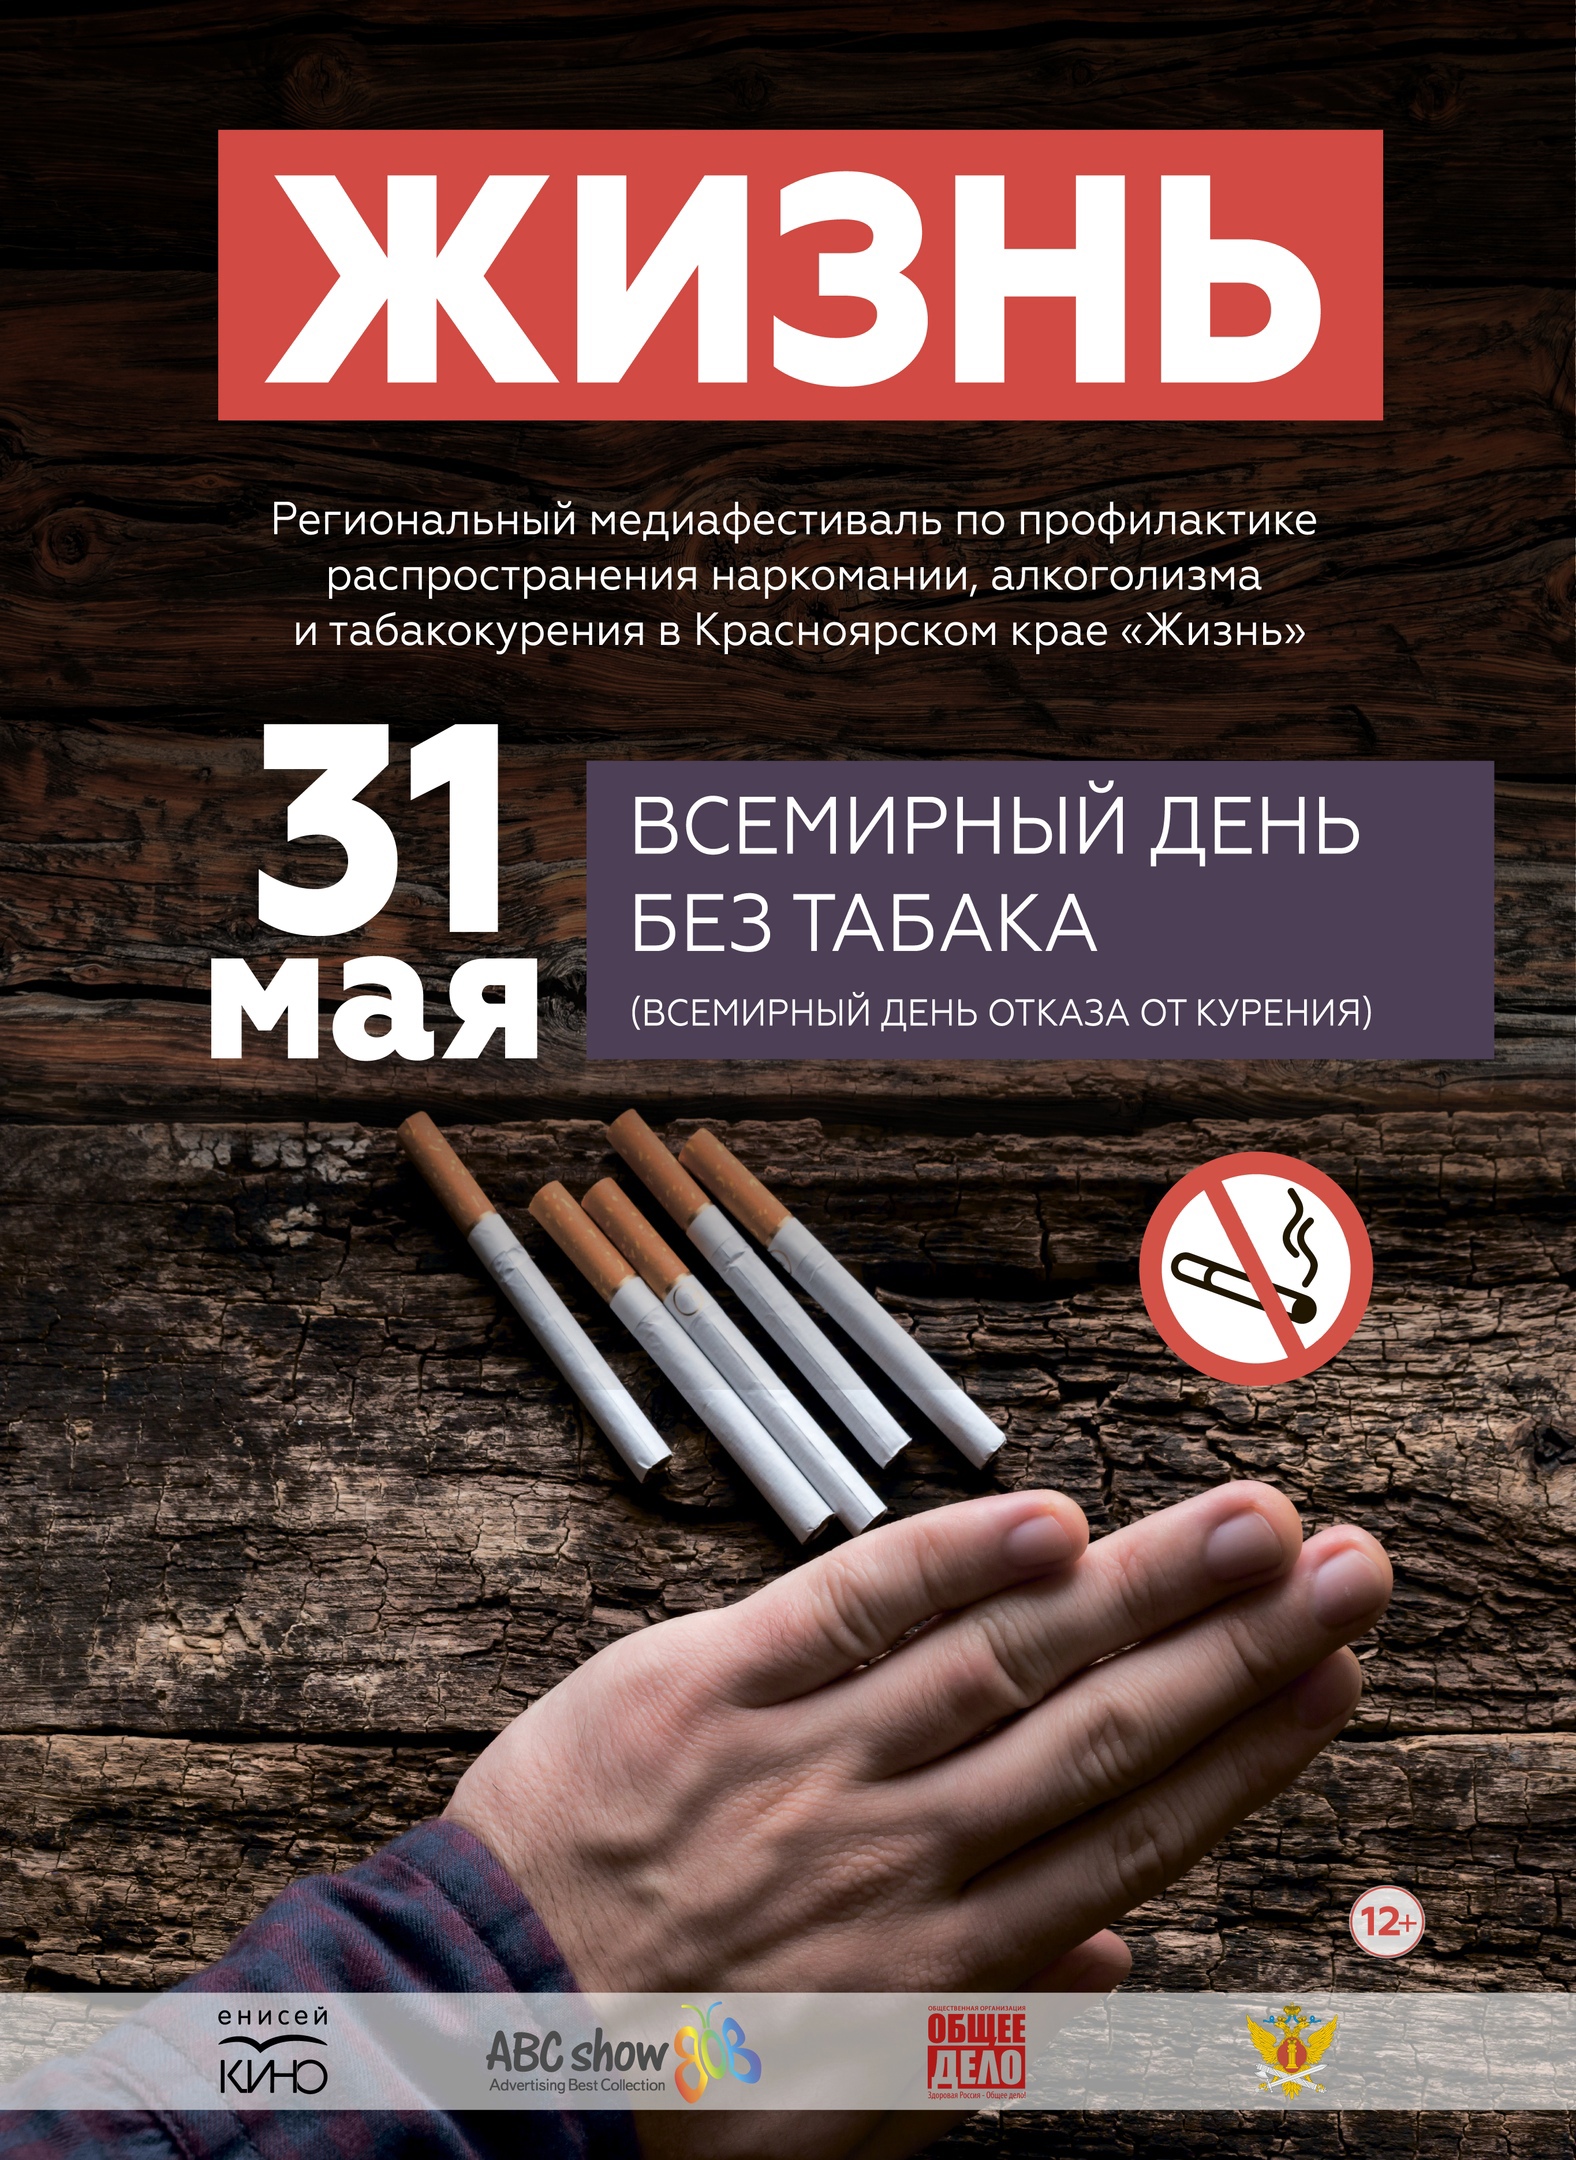 В Красноярском крае прошла первая акция в рамках медиафестиваля «Жизнь»